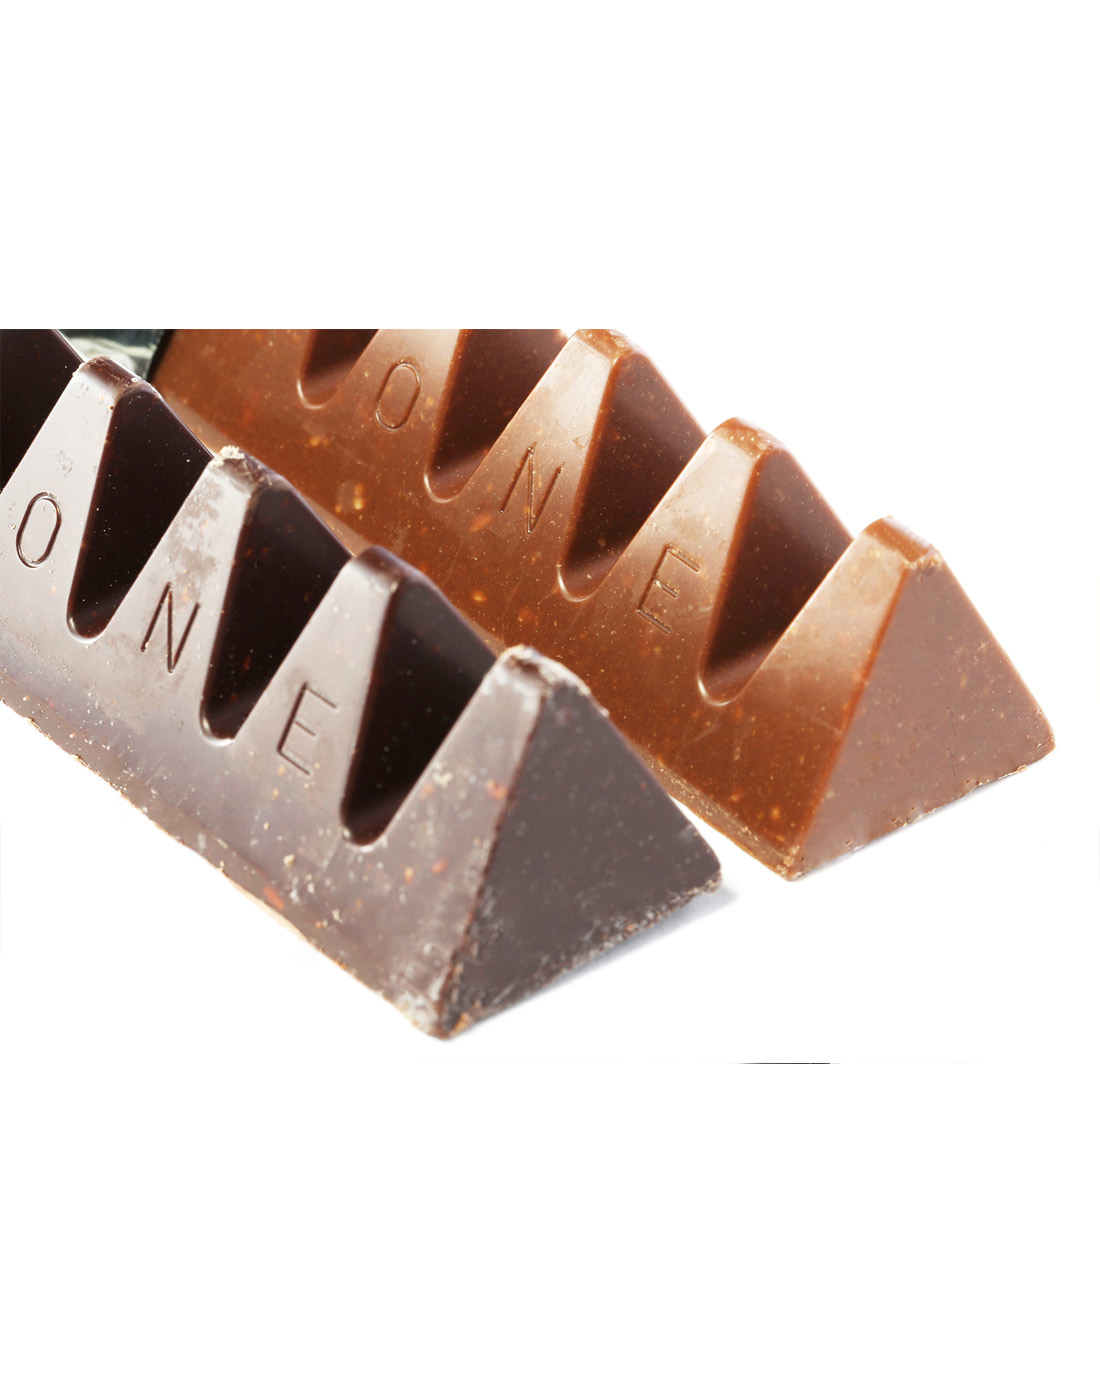 瑞士三角巧克力礼盒